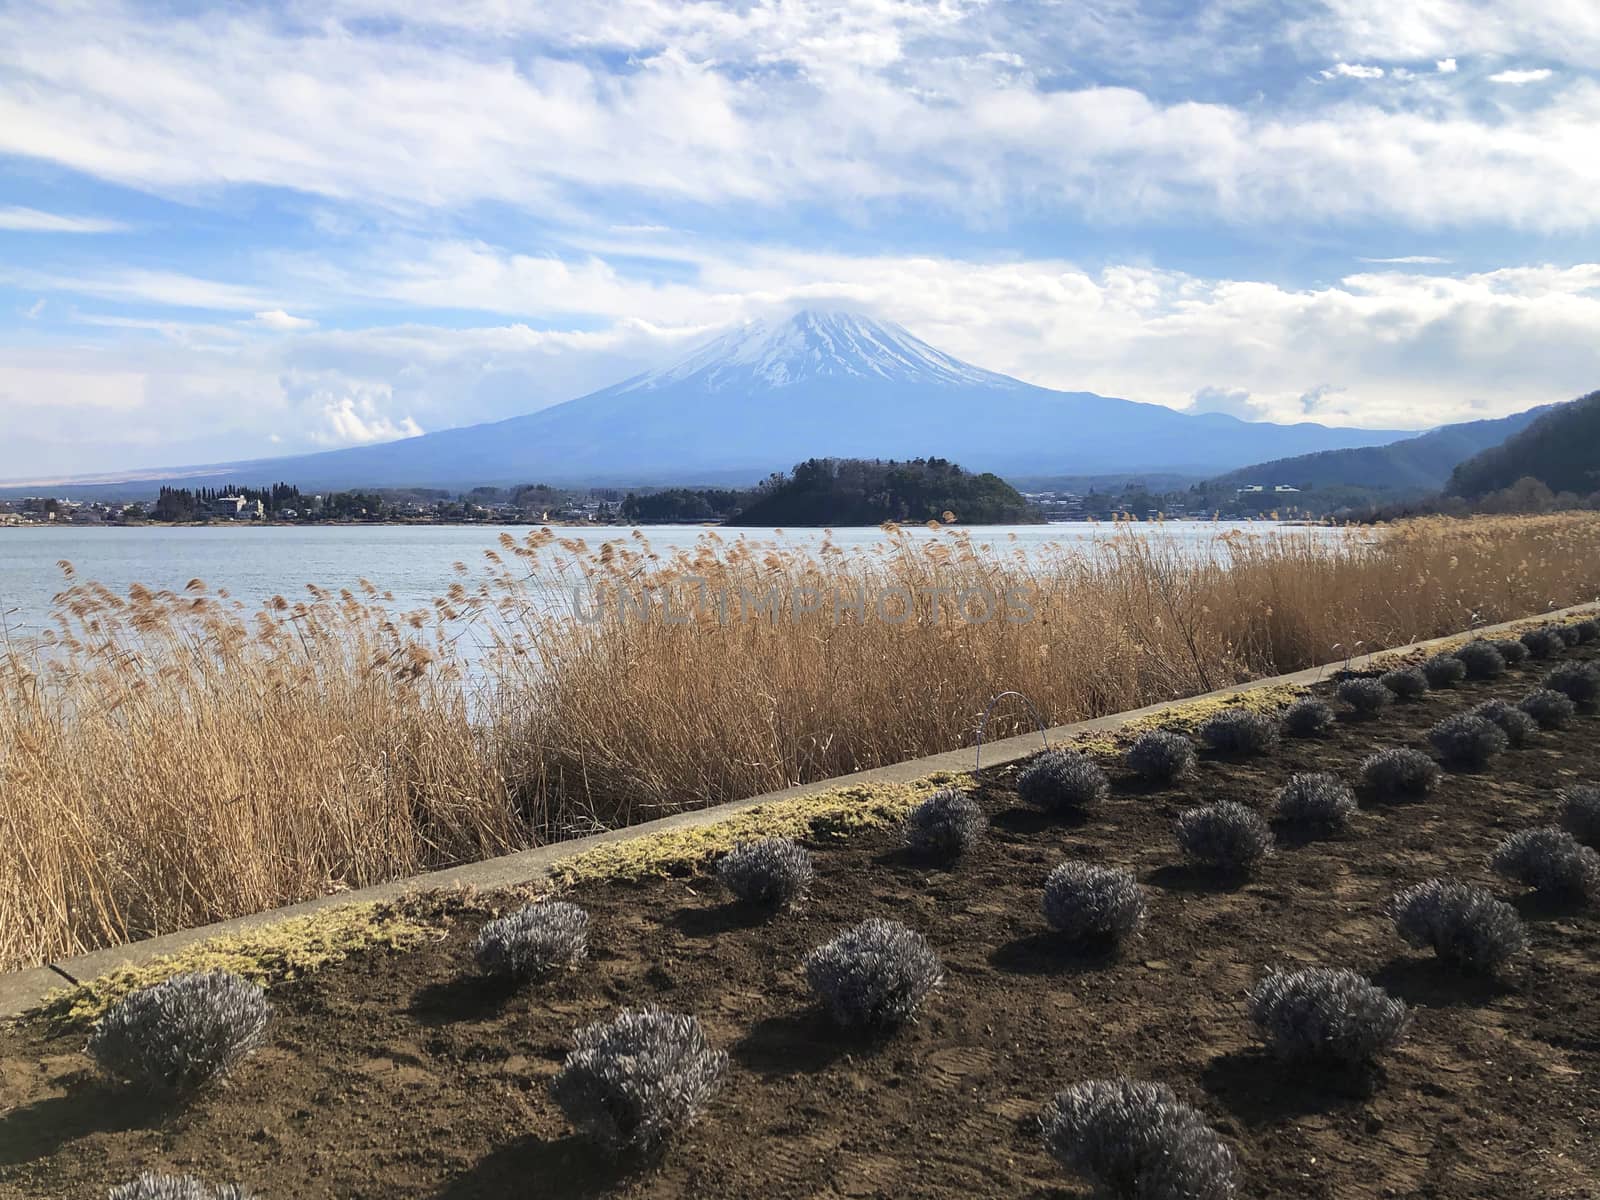 Beautiful view of  Mountain Fuji and Lake Kawaguchiko in Japan by Surasak